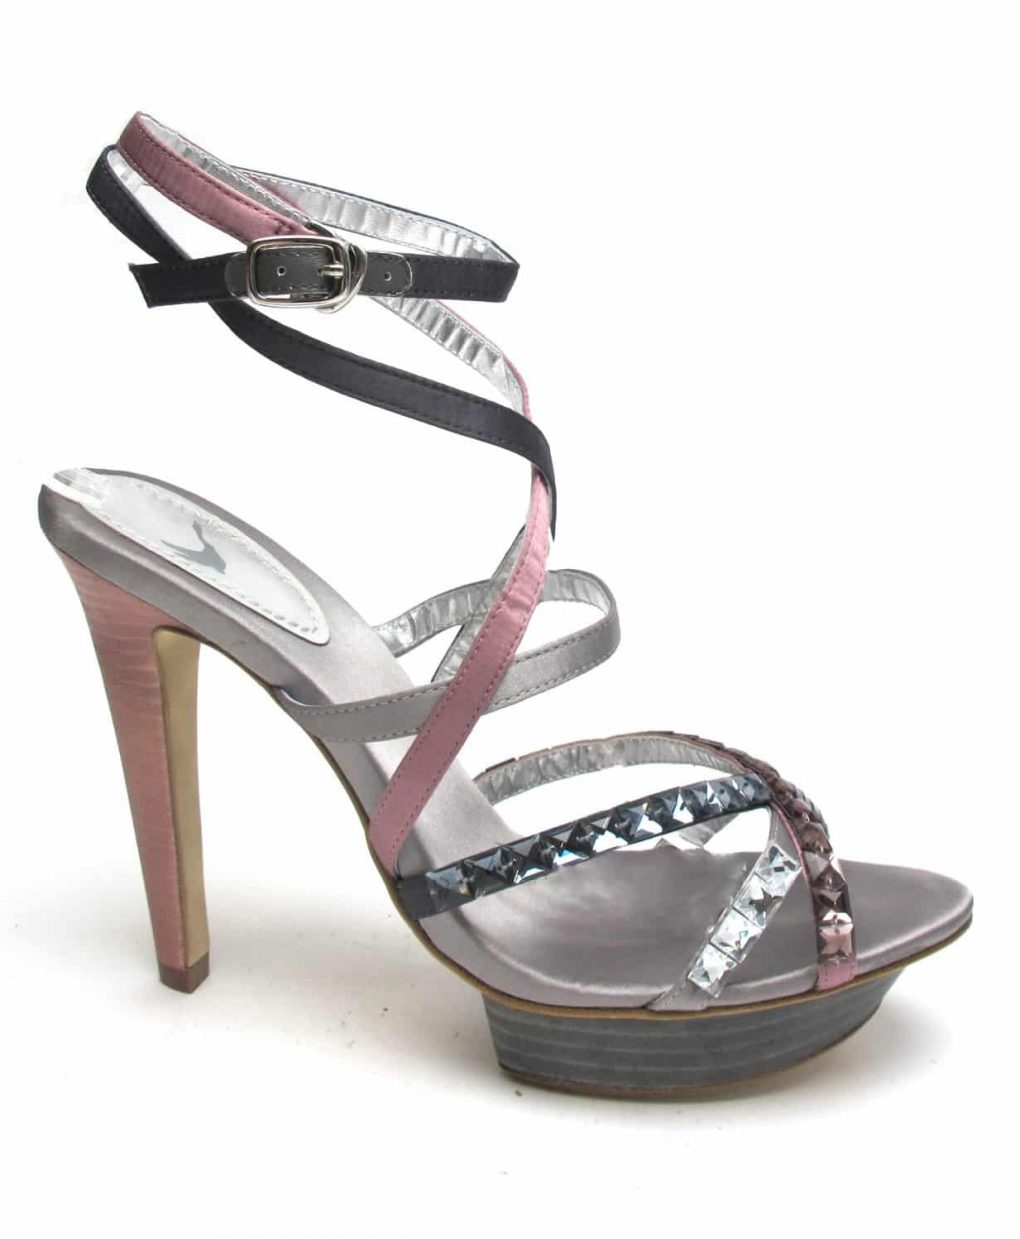 Tsuru Grey & Pink strappy heels with crystals